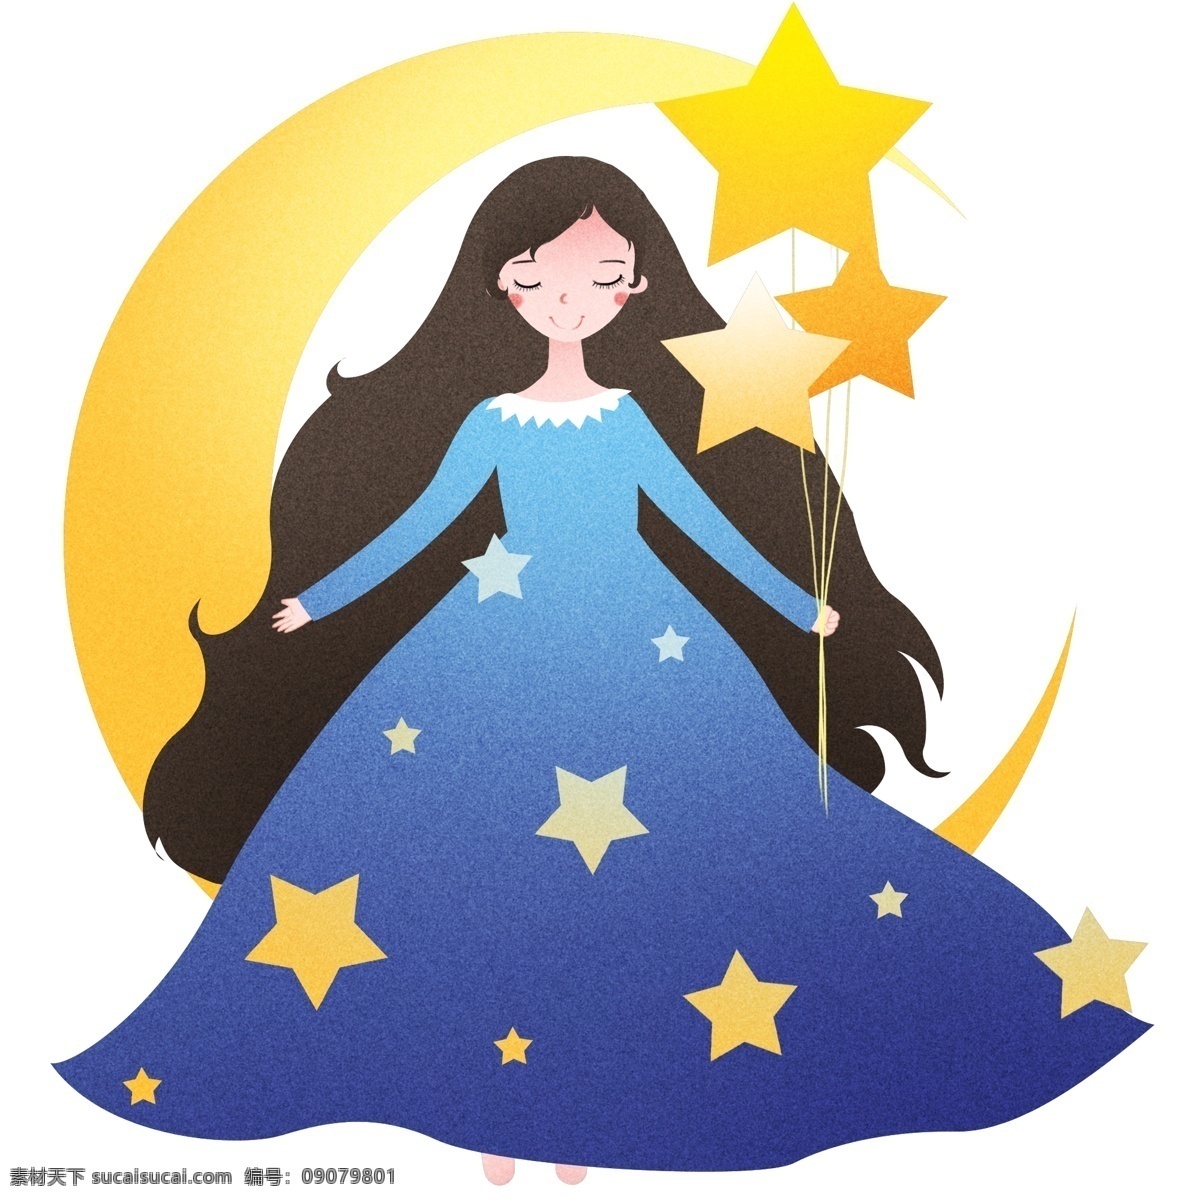 睡觉 小女孩 星星 世界 睡眠 日 插画 睡觉的小女孩 黄色的星星 漂亮的小女孩 卡通人物 熟睡 打呼噜